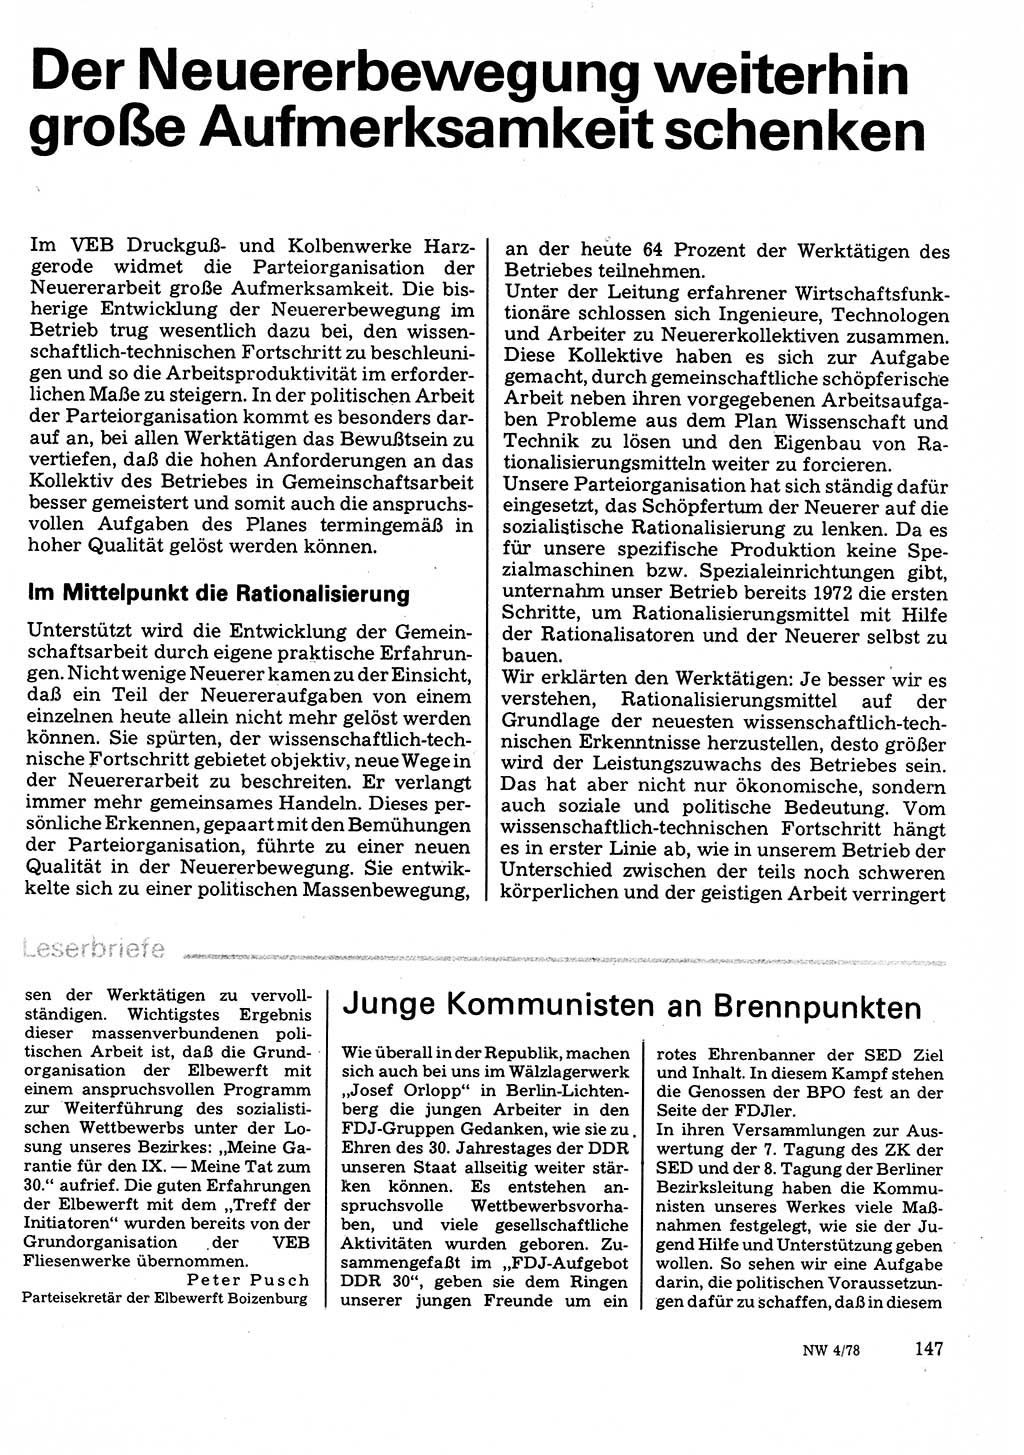 Neuer Weg (NW), Organ des Zentralkomitees (ZK) der SED (Sozialistische Einheitspartei Deutschlands) für Fragen des Parteilebens, 33. Jahrgang [Deutsche Demokratische Republik (DDR)] 1978, Seite 147 (NW ZK SED DDR 1978, S. 147)